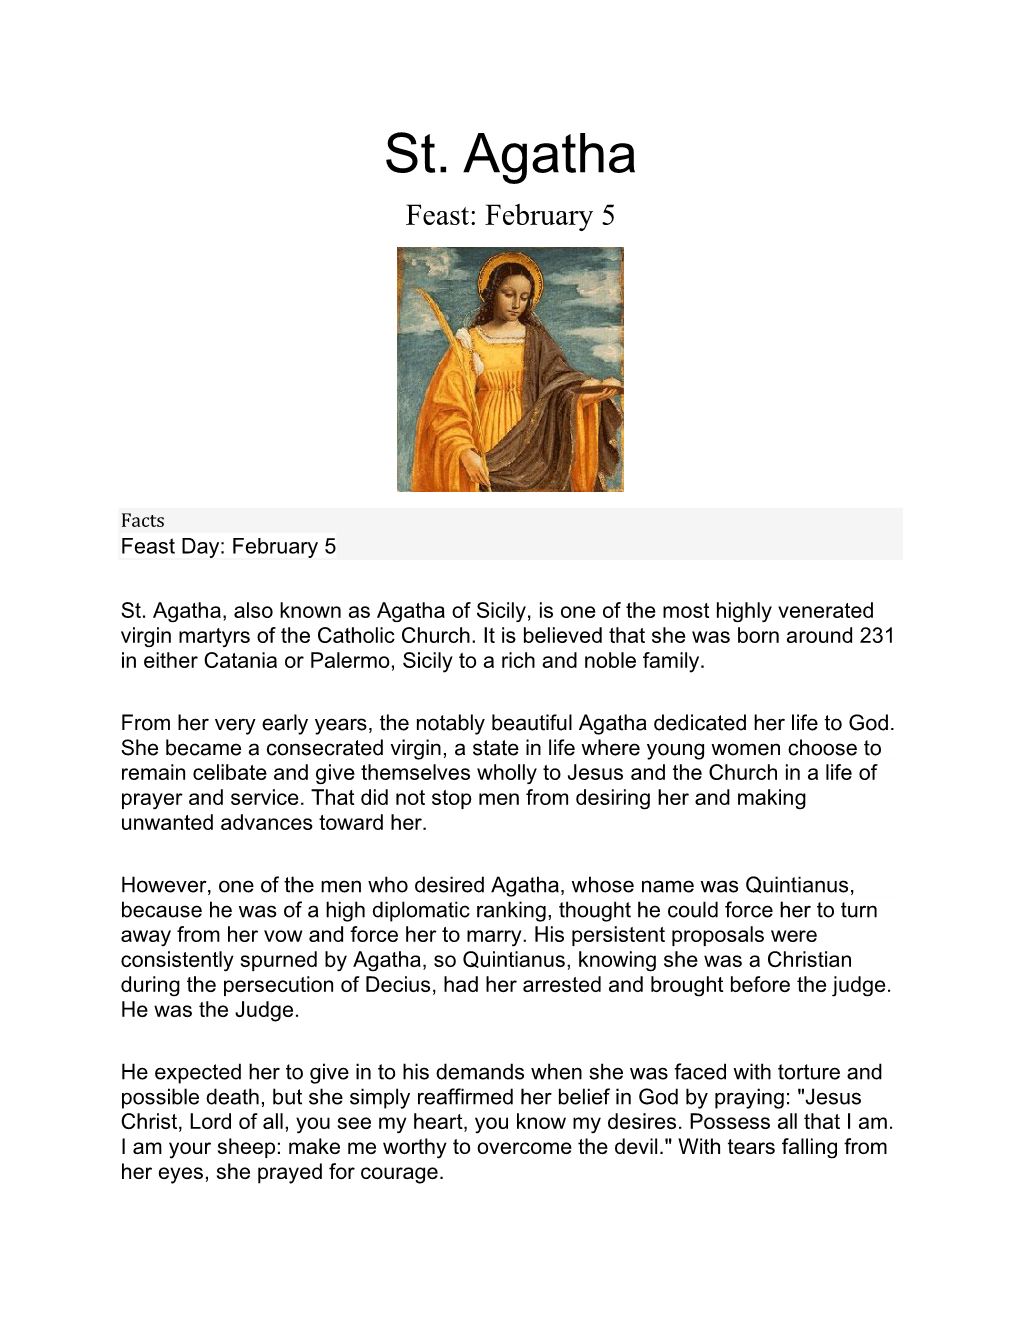 St. Agatha Feast: February 5